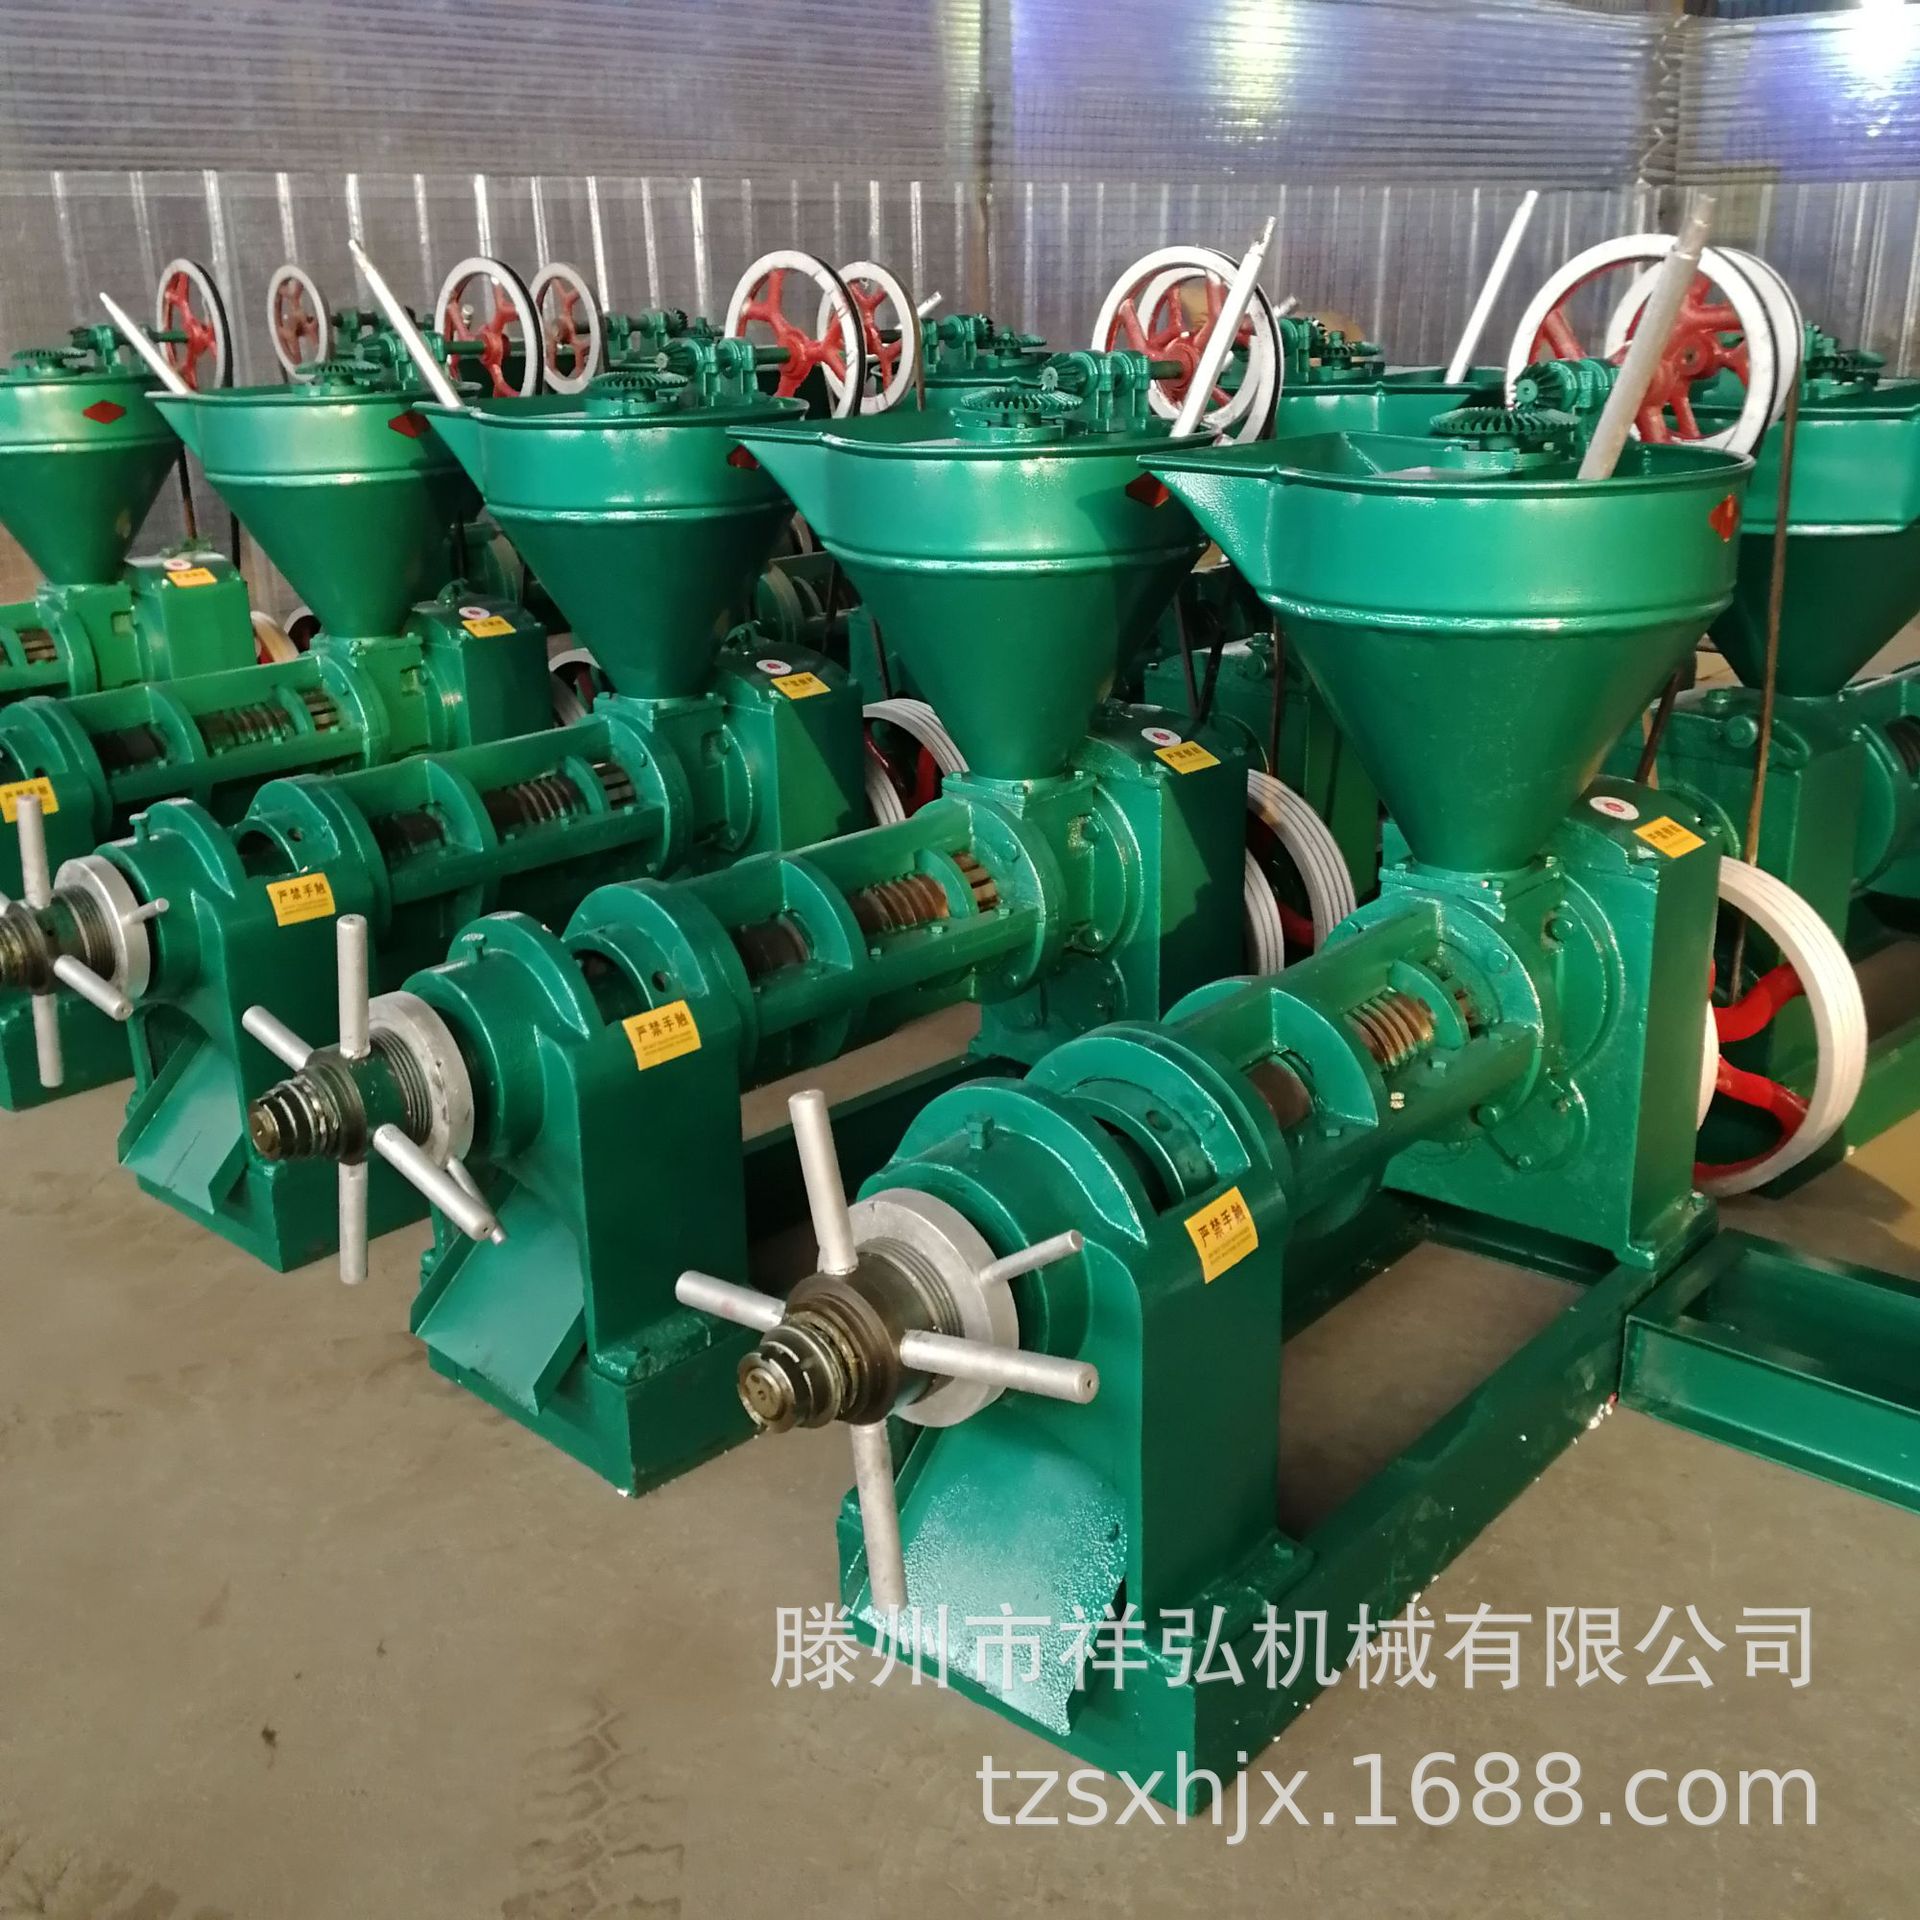 广州小型家用电榨油机  螺旋榨油机厂家   68型榨油机图片